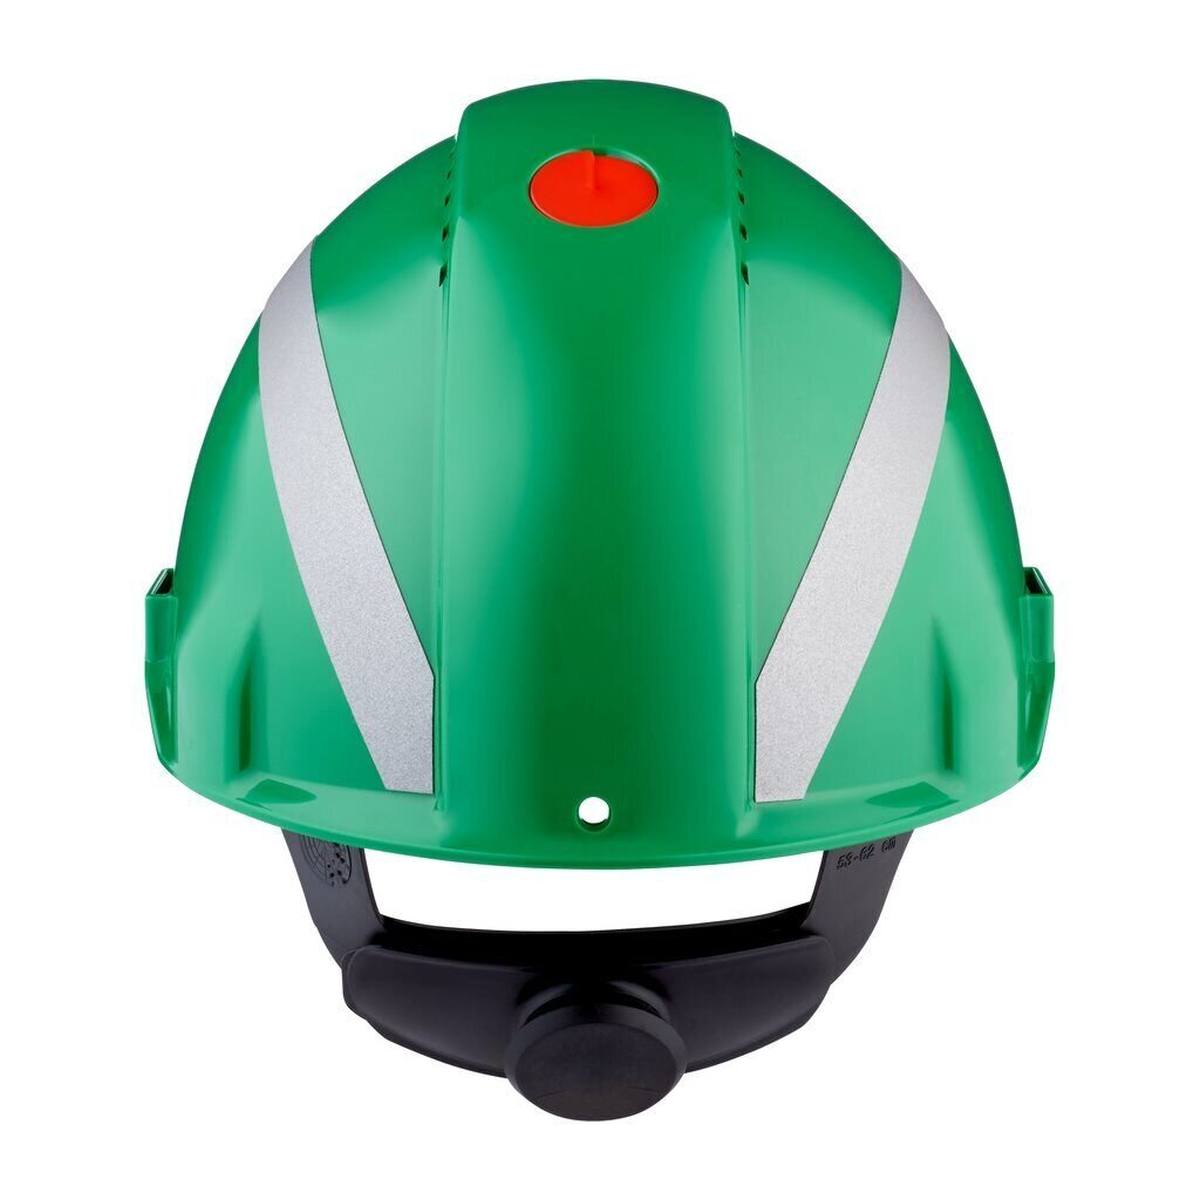 3M G3000 Schutzhelm mit UV-Indikator, grün, ABS, belüftet Ratschenverschluss, Kunststoffschweißband, Reflex-Aufkleber